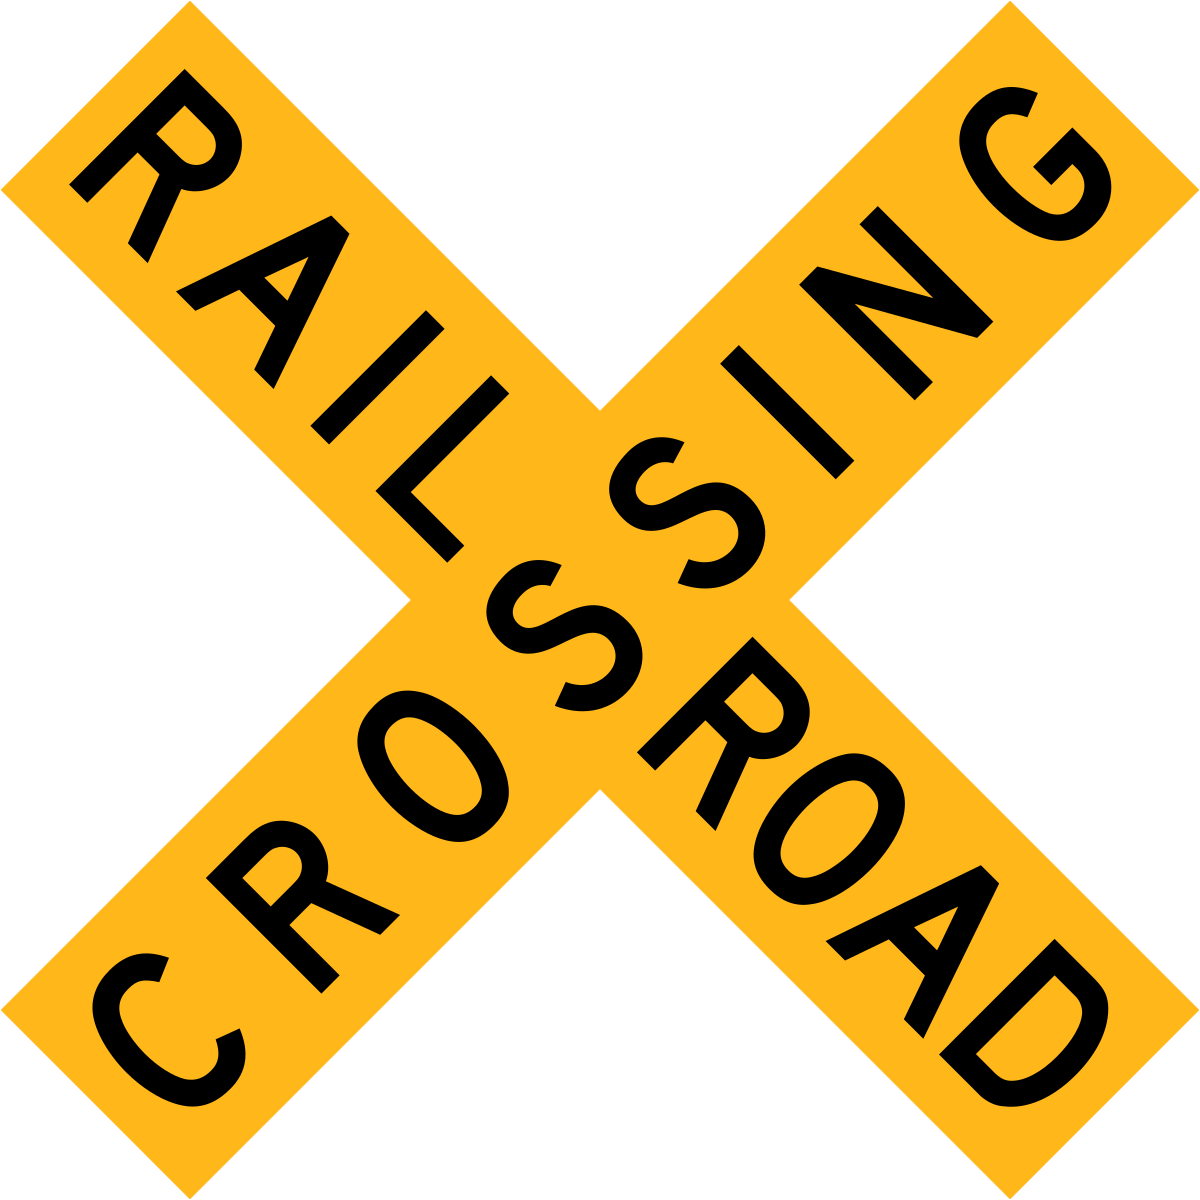 rail road sign